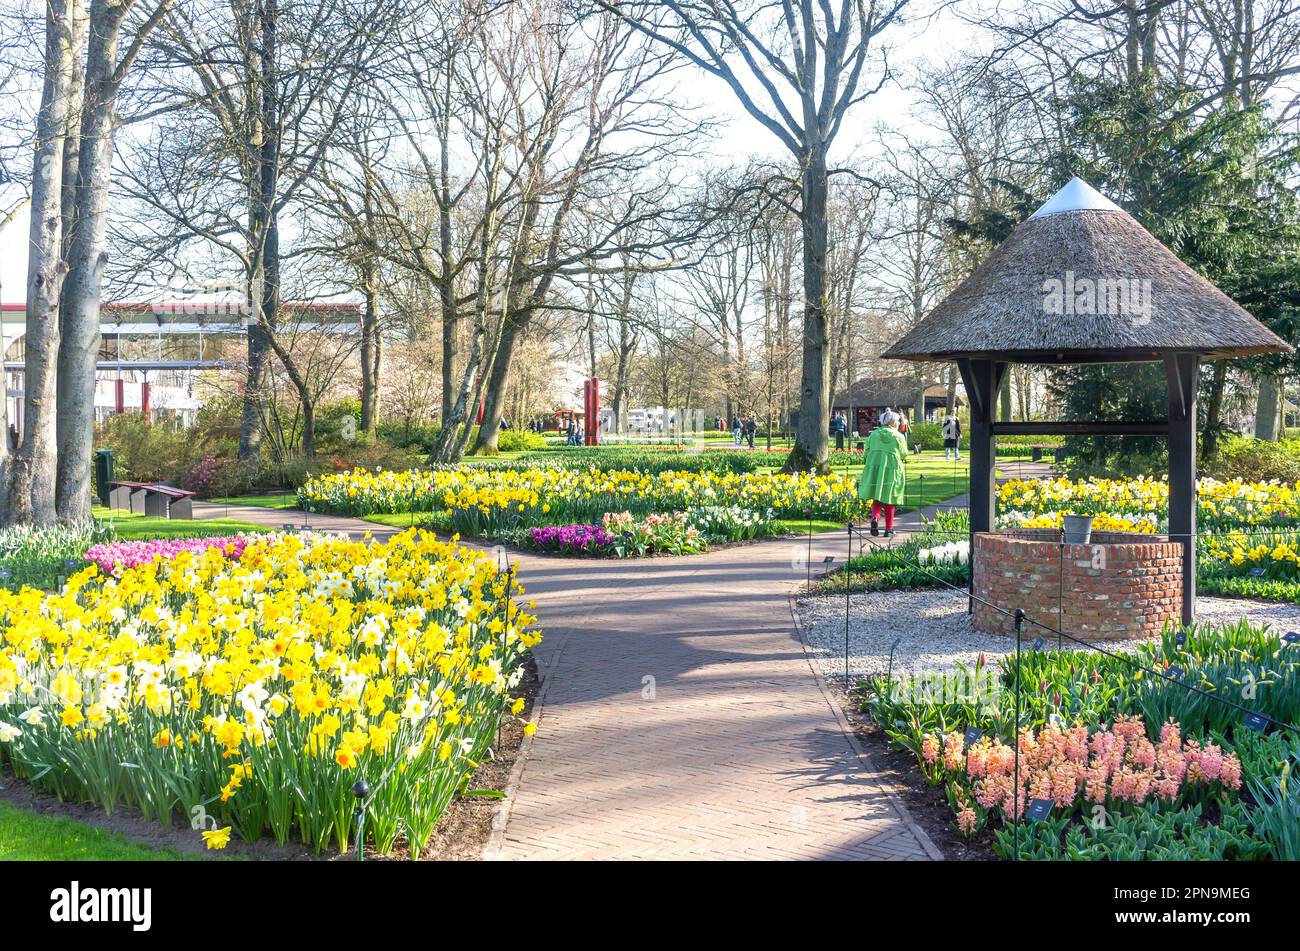 Champ de fleurs, Keukenhof Gardens, Lisse, Hollande-Méridionale (Zuid-Holland), Royaume des pays-Bas Banque D'Images